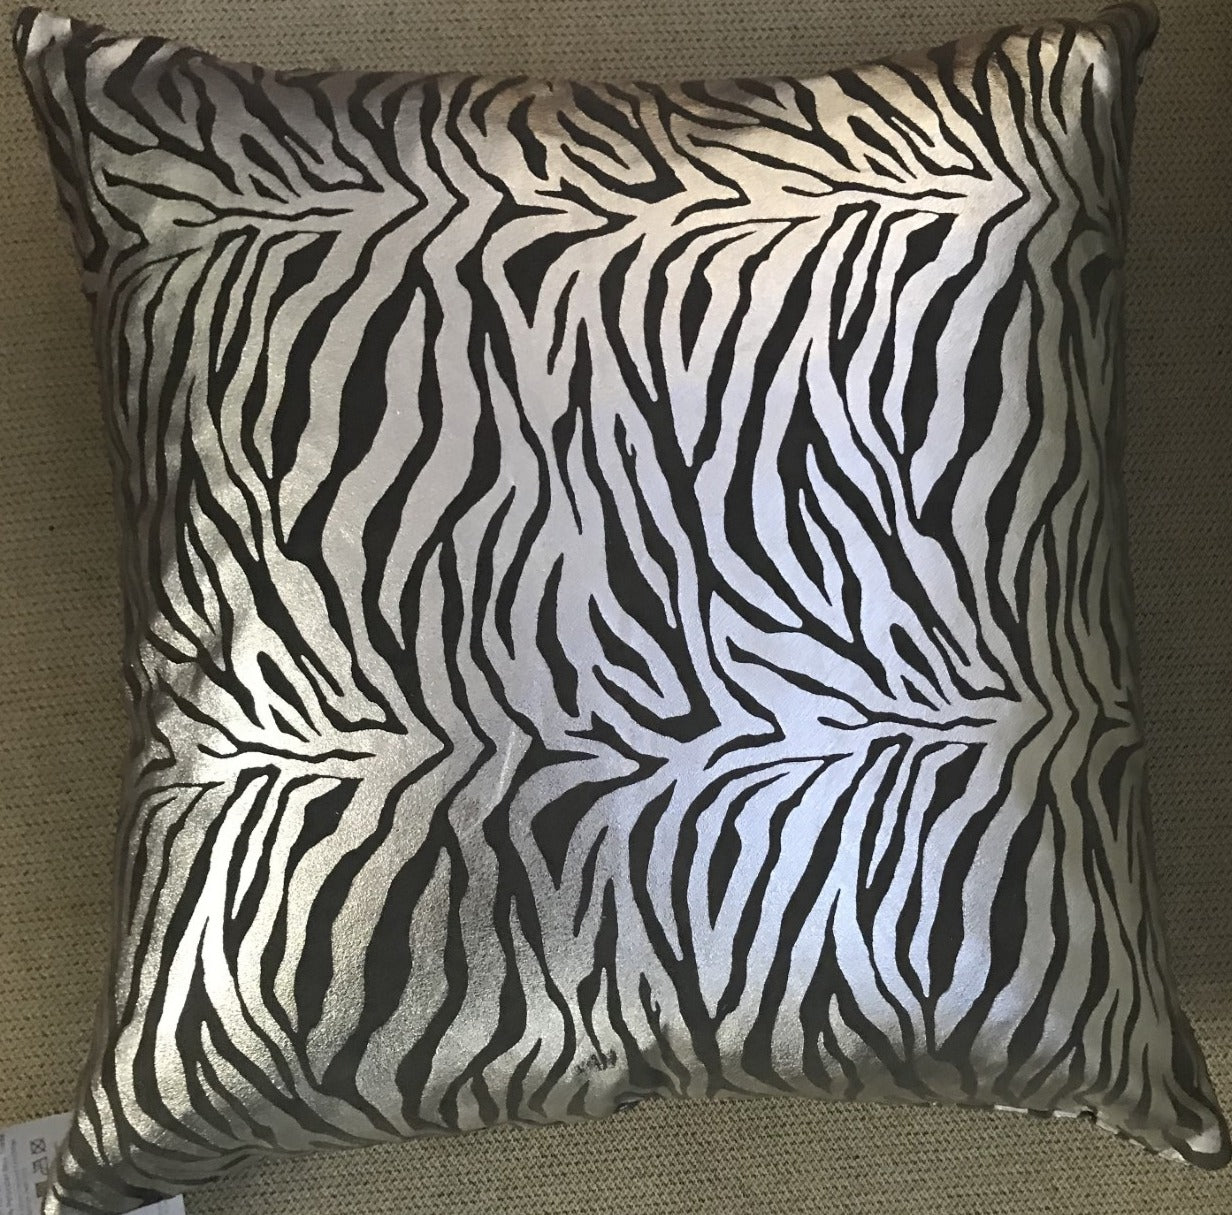 Zebra Metallic Print, Silver - Cushion Cover Pair